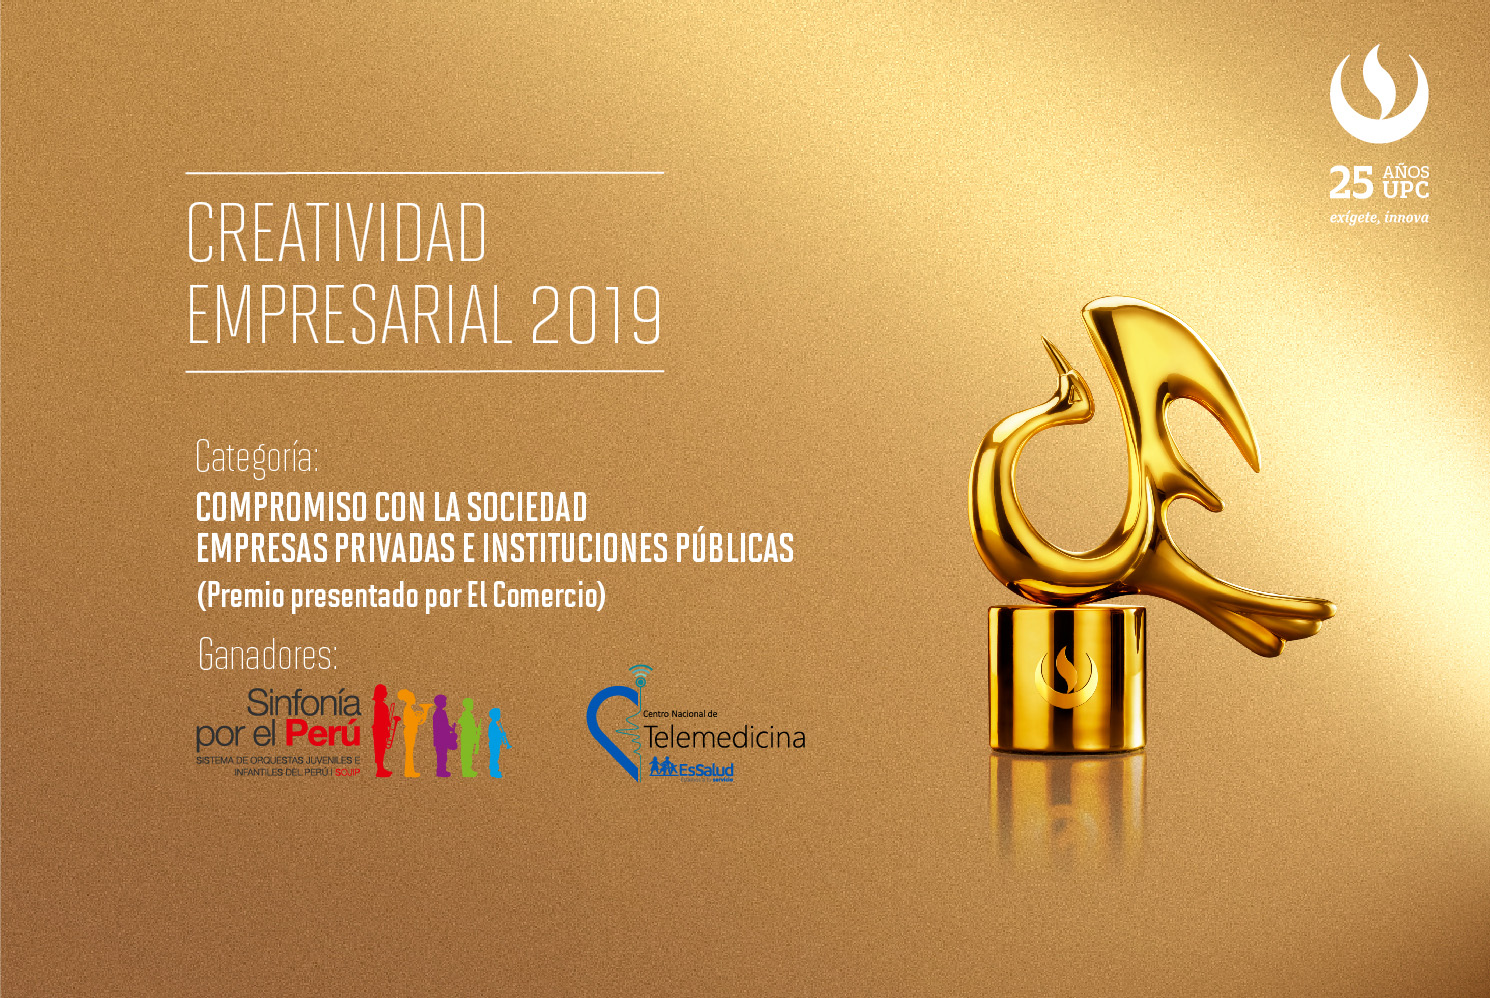 Creatividad Empresarial 2019: COLPONET y Sistema de Orquestas Infantiles y Juveniles del Perú fueron reconocidas en la categoría Compromiso con la sociedad